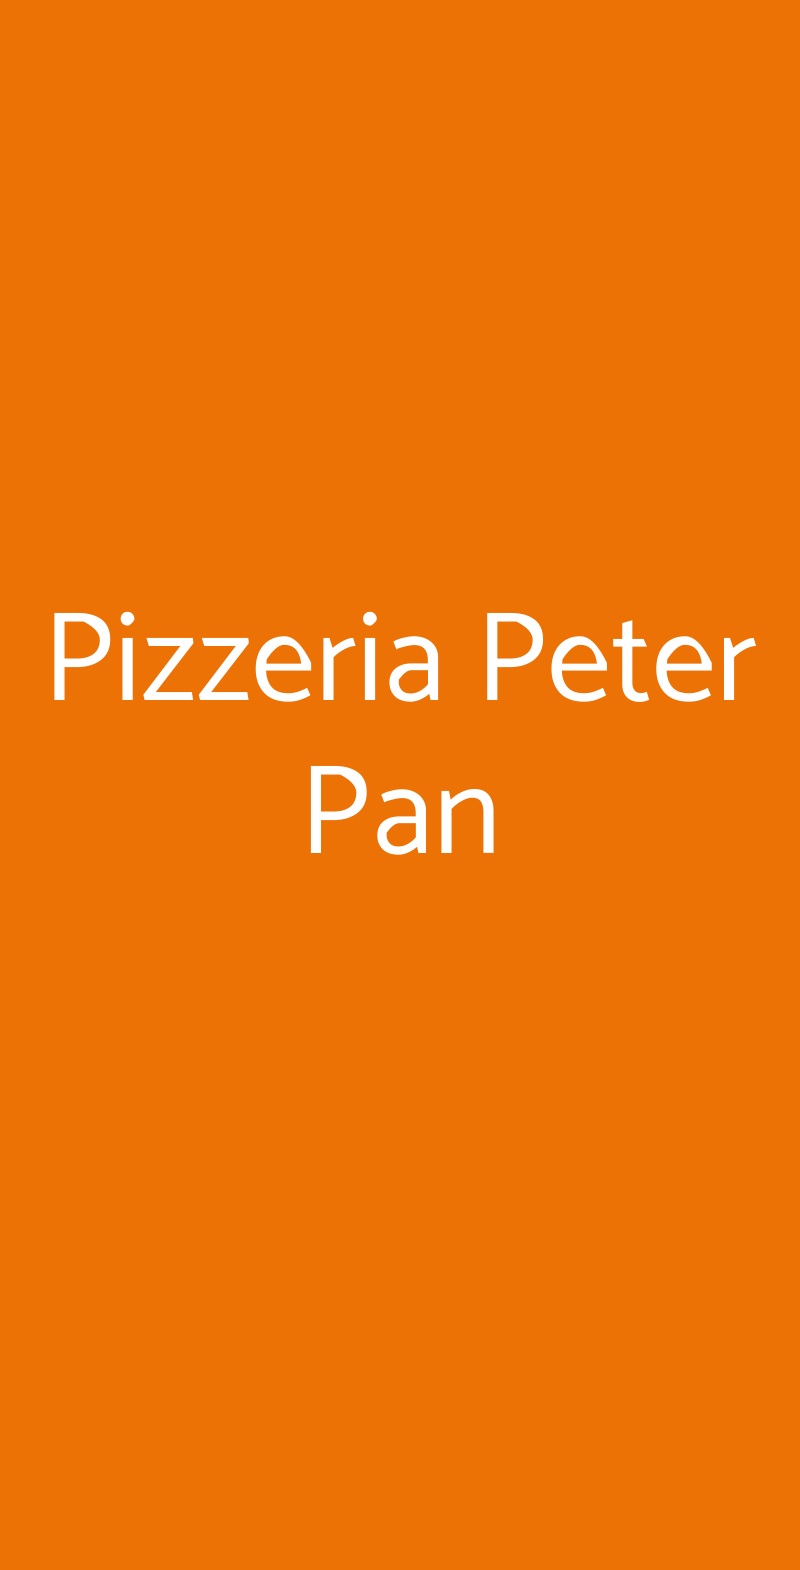 Pizzeria Peter Pan Milano menù 1 pagina